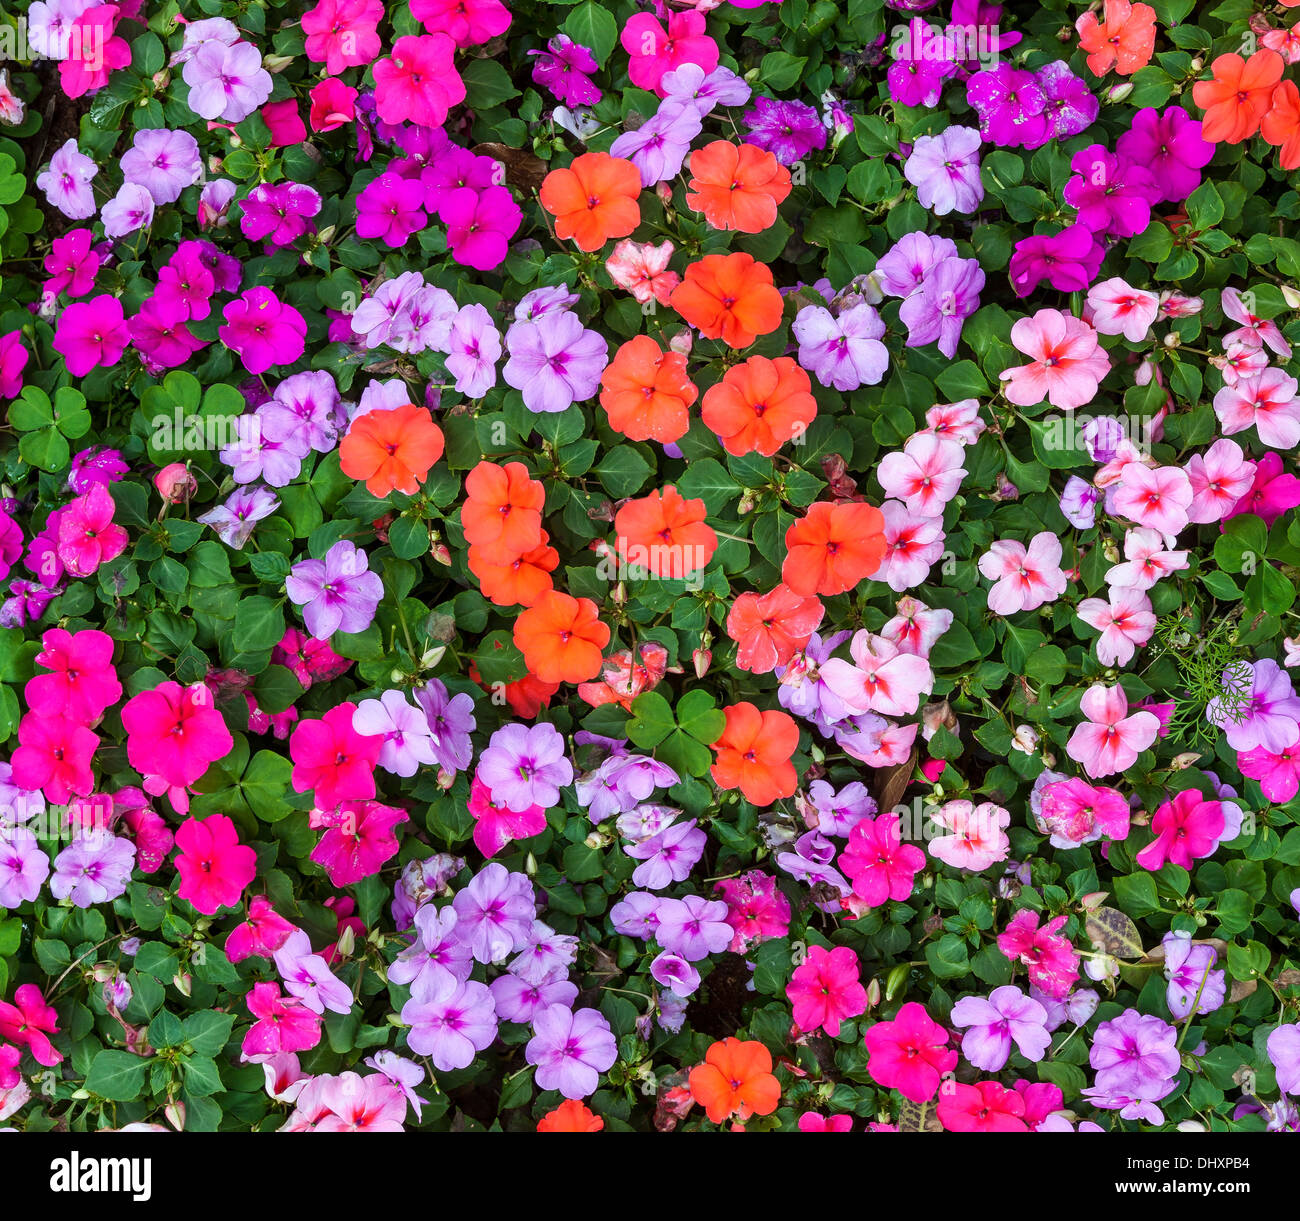 L'impatiens multicolores en fleurs plantes abondamment dans un jardin de fleurs d'été. Banque D'Images